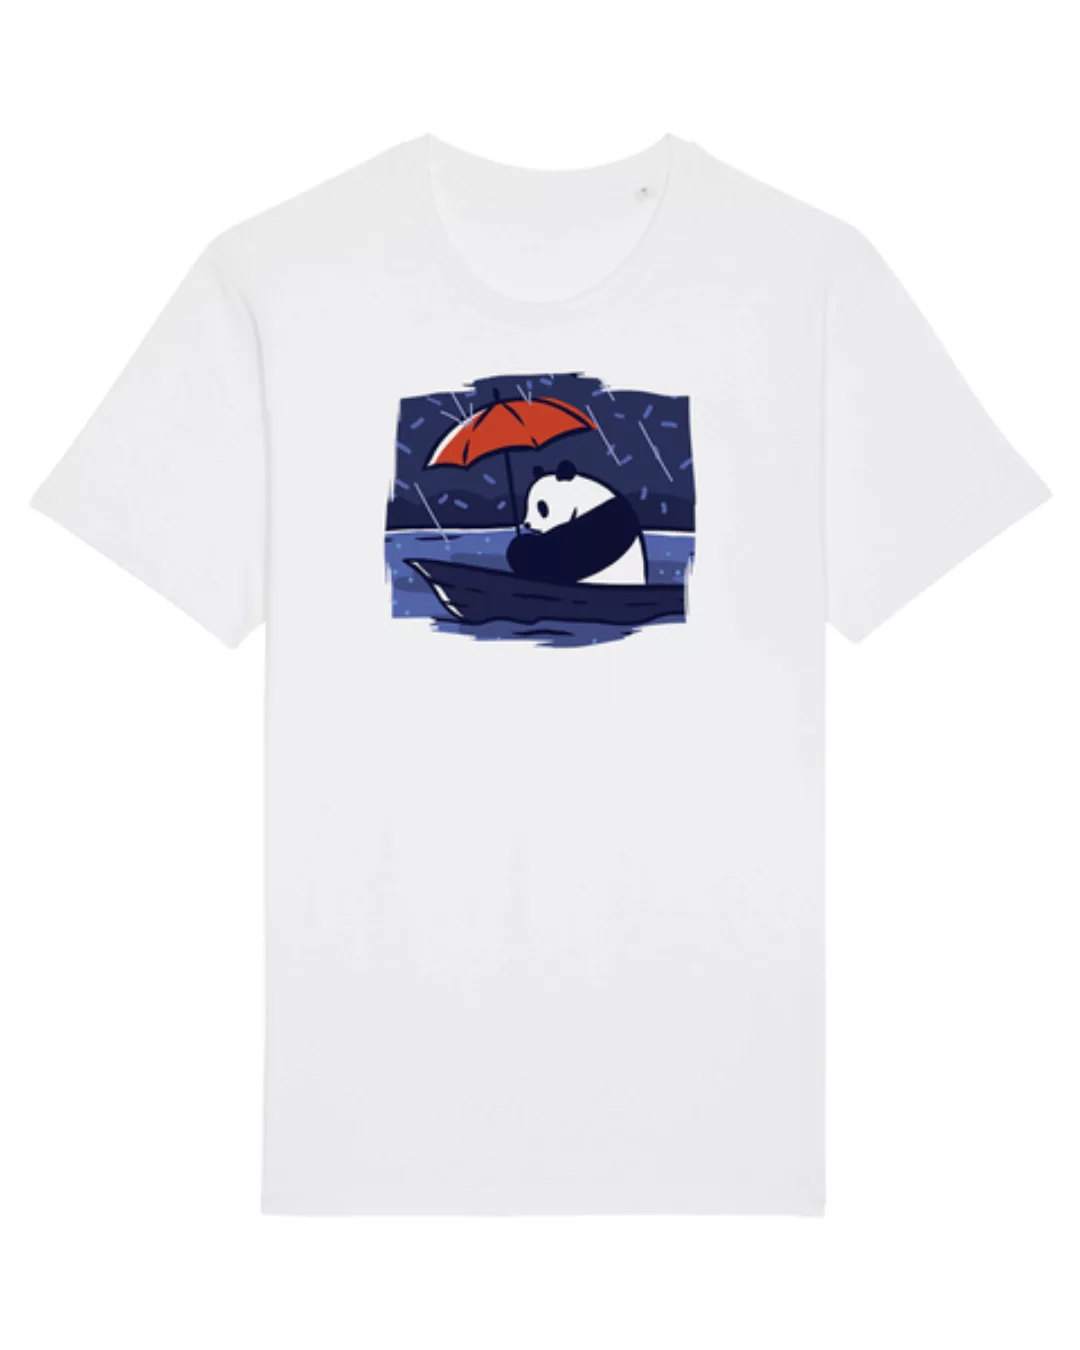 Panda Under Rain | T-shirt Unisex günstig online kaufen